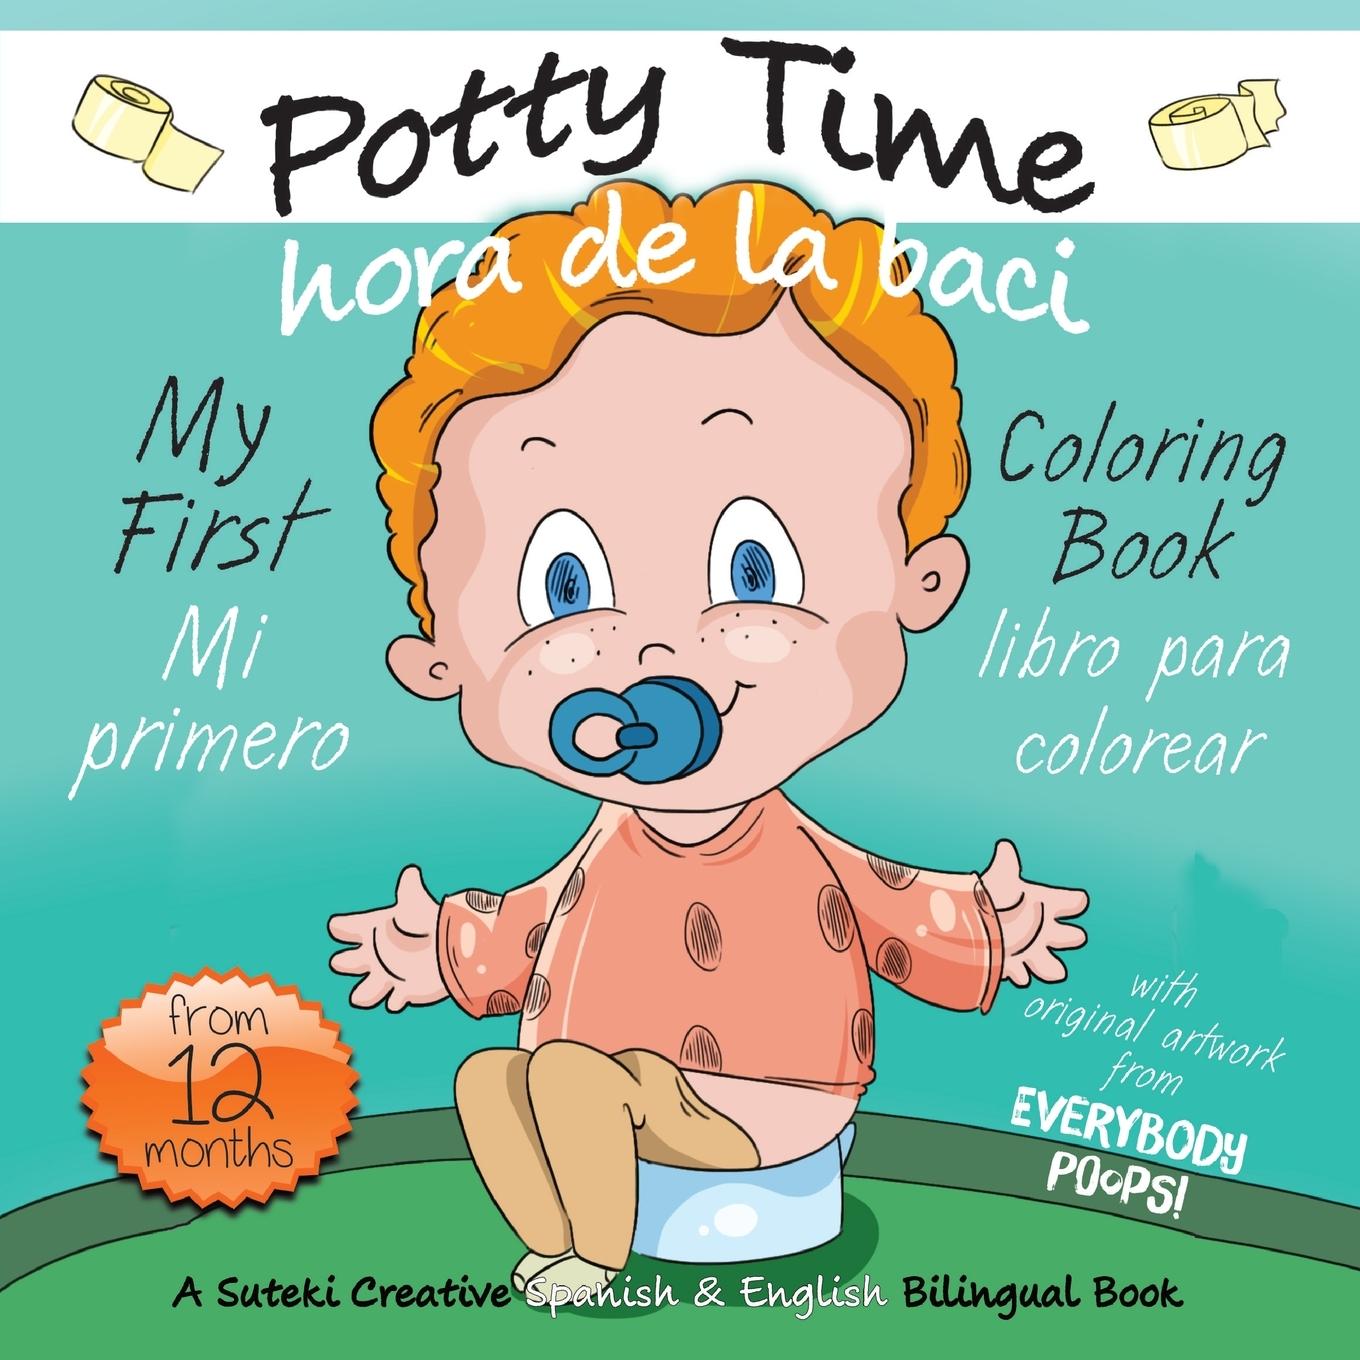 Книга My First Potty Time Coloring Book / Mi primero hora de la baci libro para colorear 